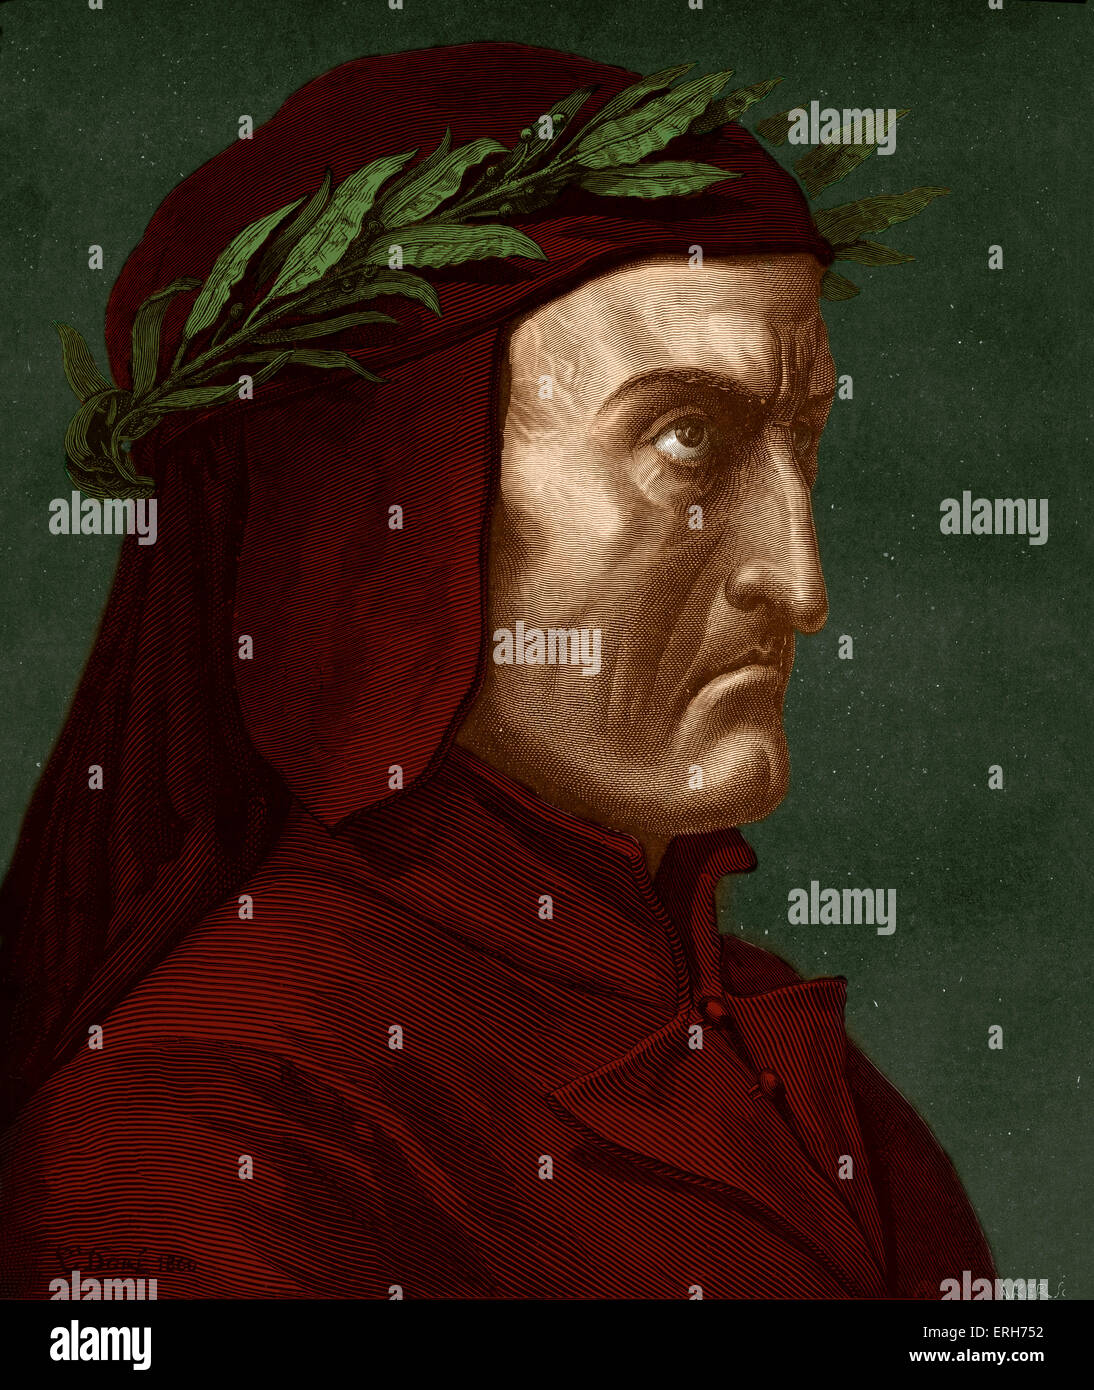 Dante Alighieri, portrait de profil avec couronne de laurier. Poète italien, 1265-1321. Banque D'Images